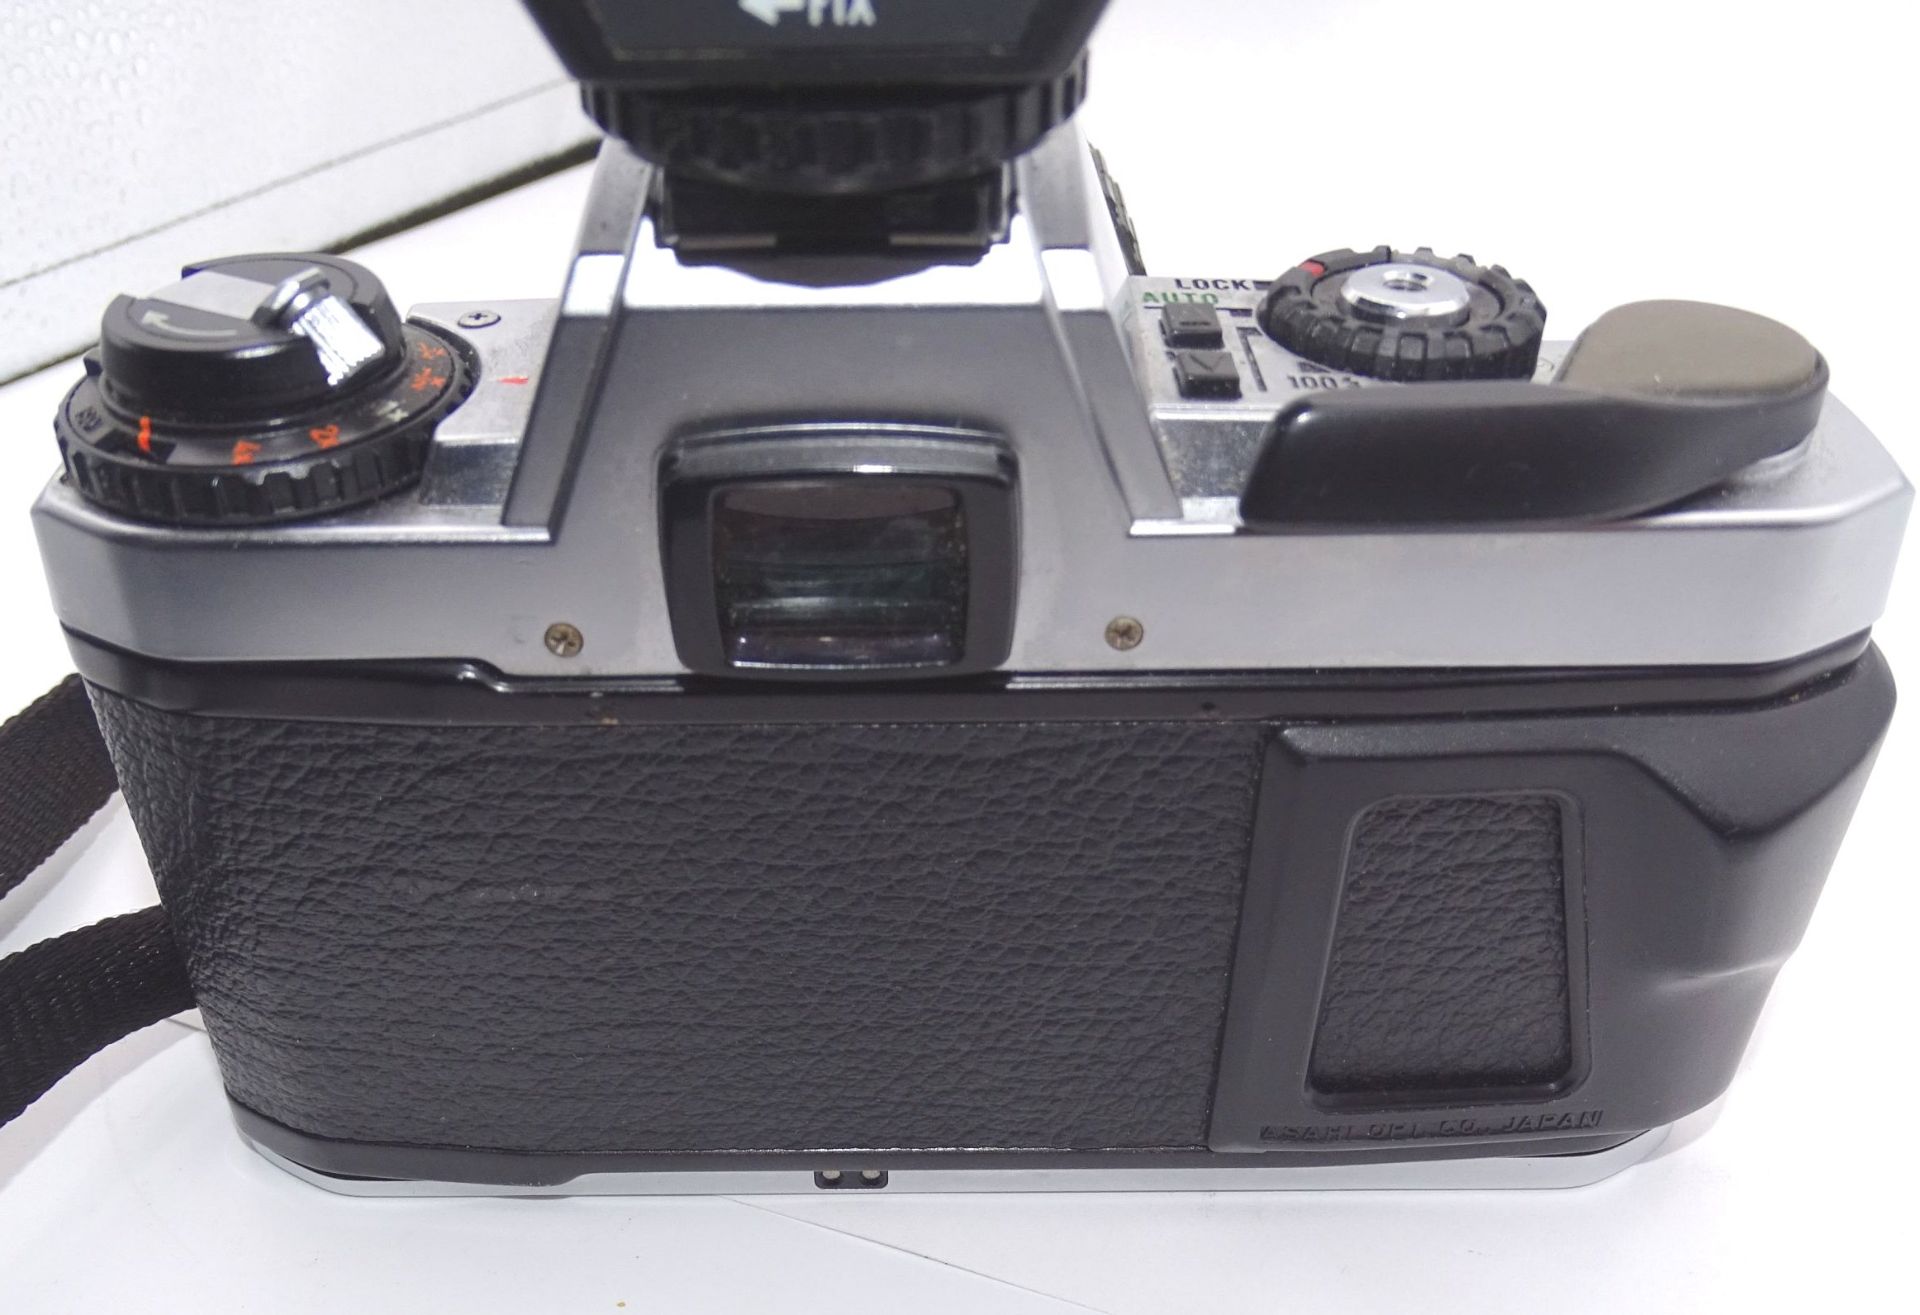 Spiegelreflexkamera "Pentax program A" mit Blitz- - -22.61 % buyer's premium on the hammer - Bild 4 aus 4